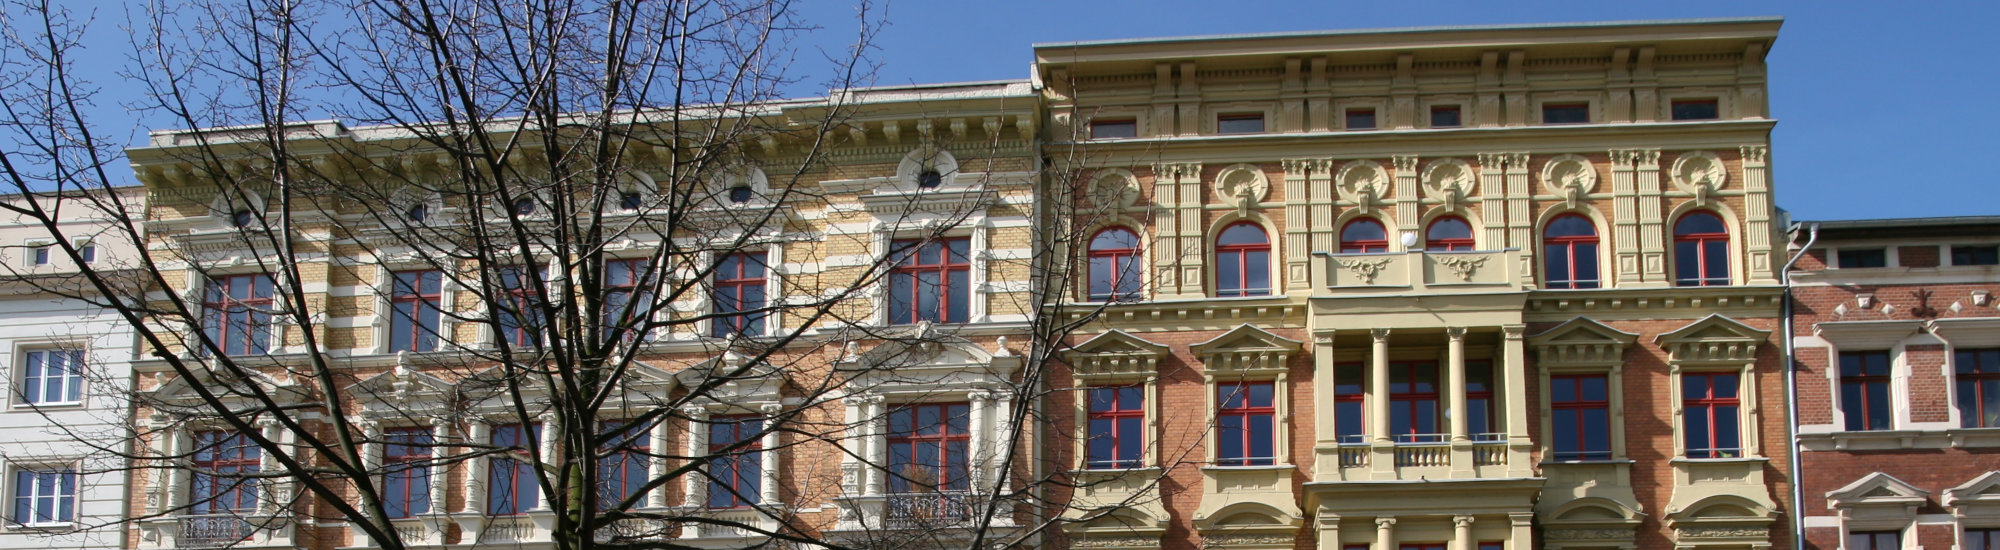 Altbausanierung von Mehrfamilienhäusern mit Denkmalschutz in Magdeburg